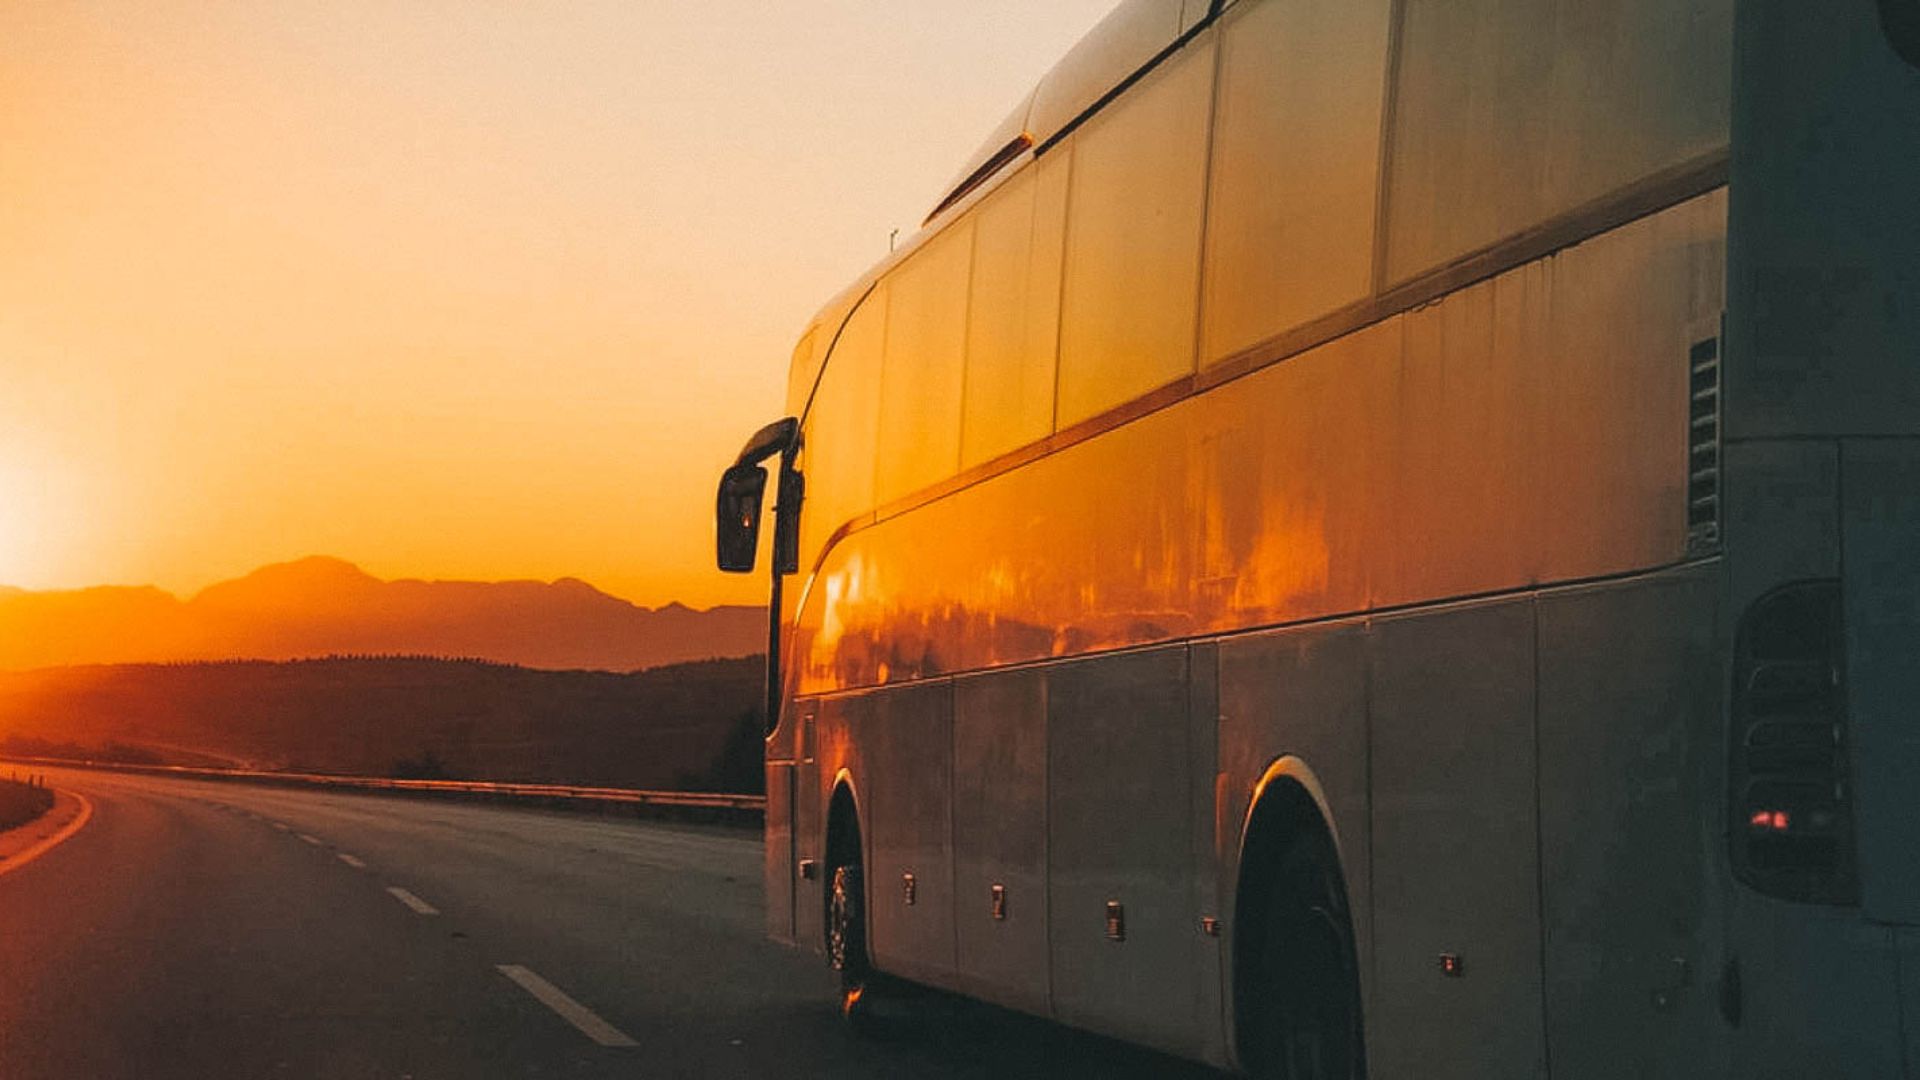 Novas rotas de viagem: conheça os melhores destinos para viajar de ônibus em 2023